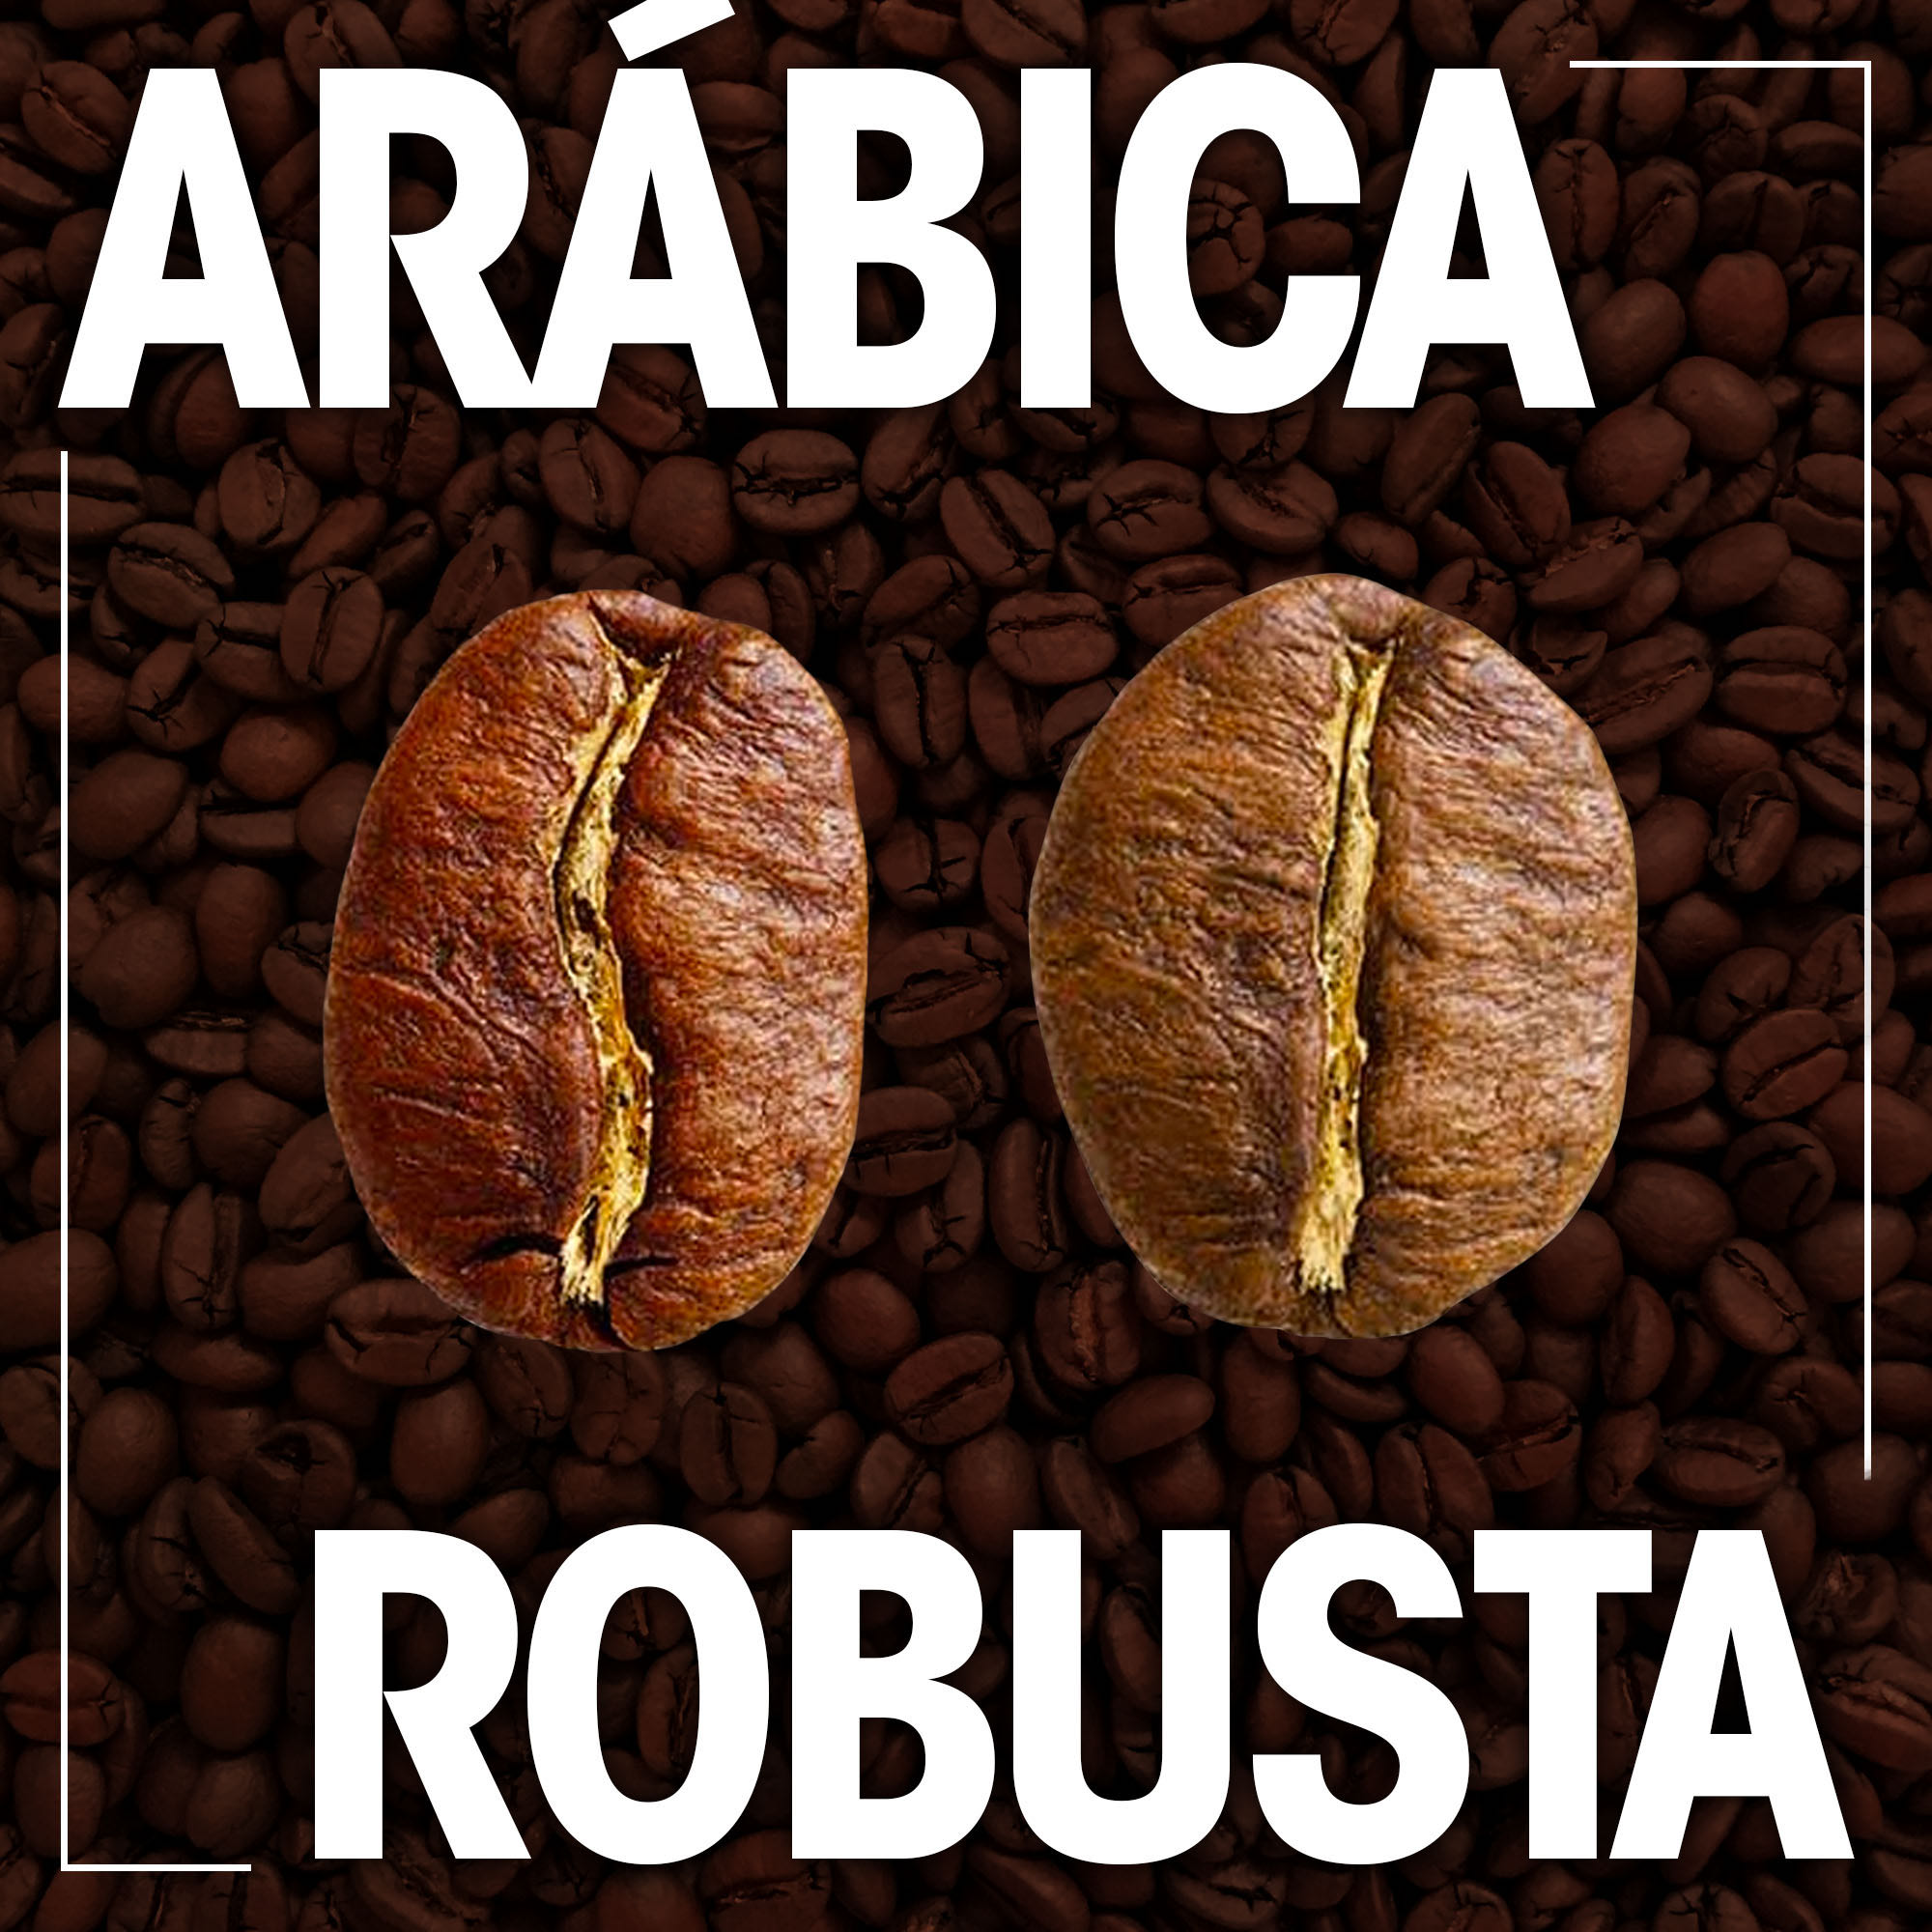 Café Arábica x Café Robusta. Você sabe qual é a diferença?